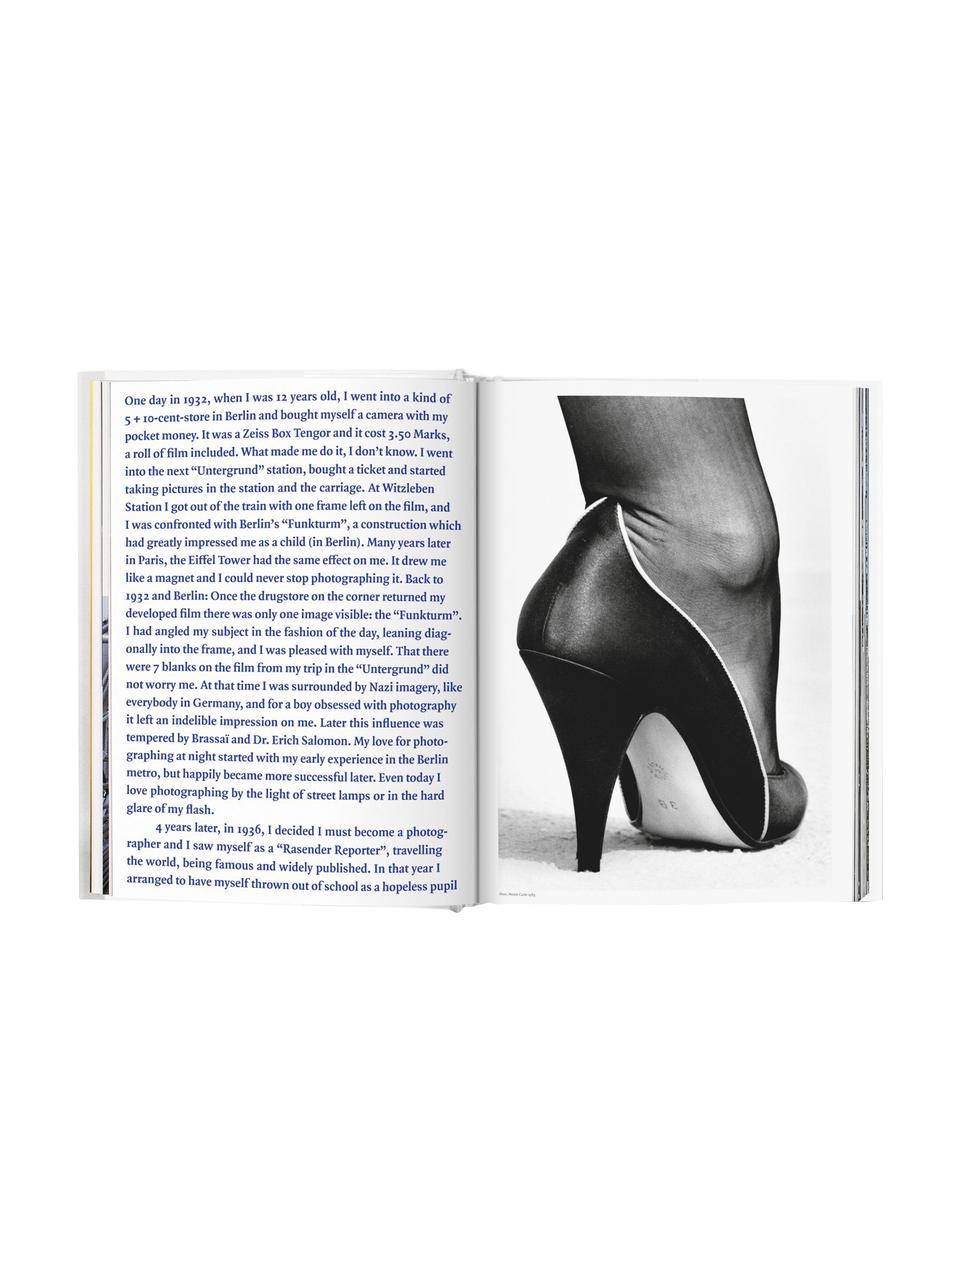 Album Helmut Newton – Sumo, Papier, twarda okładka, Szary, niebieski, D 37  x S 27 cm